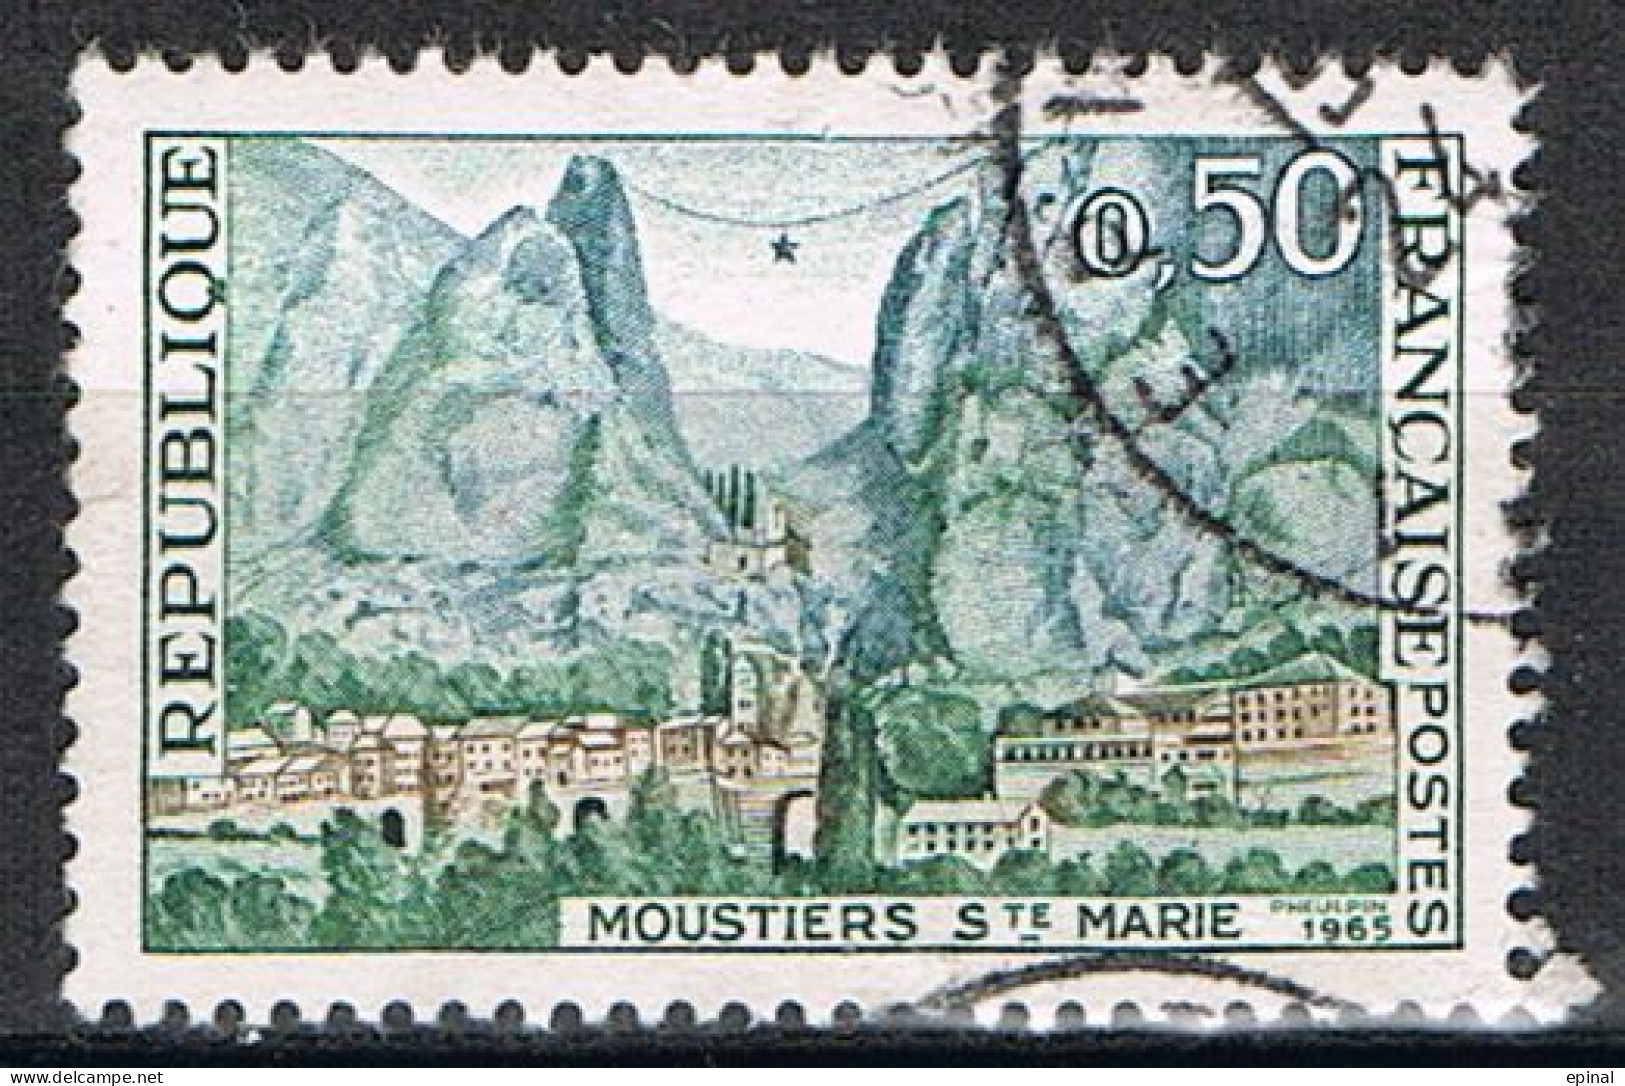 FRANCE : N° 1436 Oblitéré (Moustiers-Sainte-Marie) - PRIX FIXE - - Used Stamps